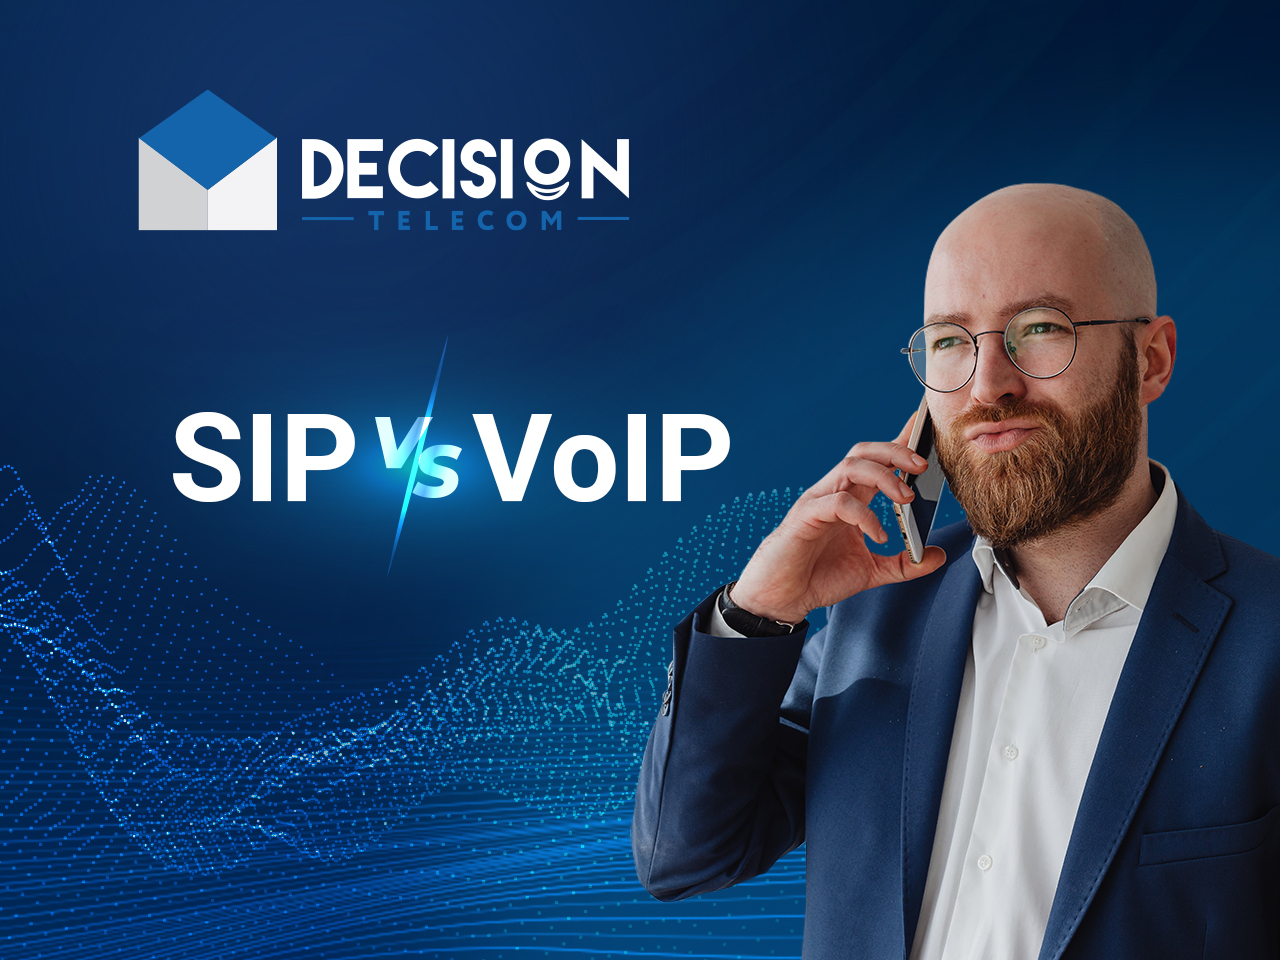 En qué se diferencia la telefonía VoIP de la SIP